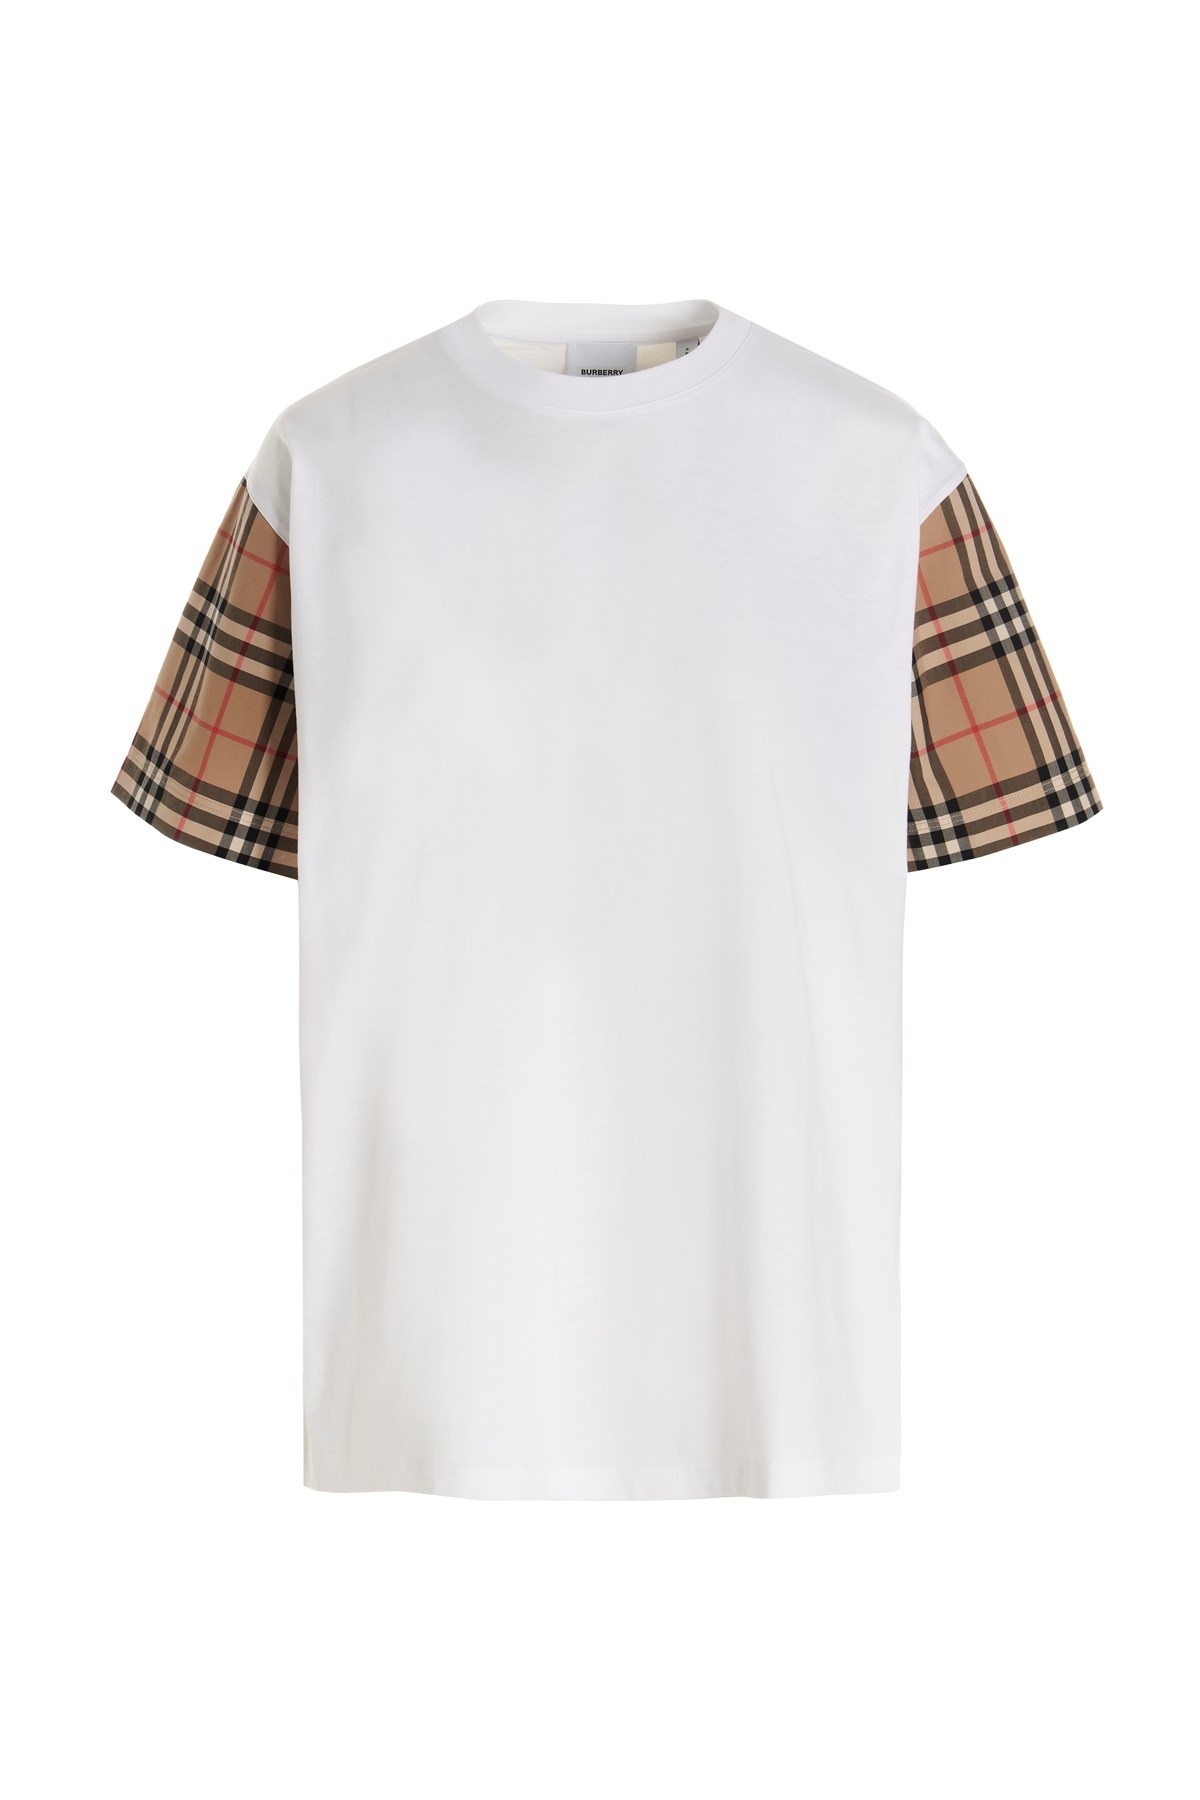 'Carrick' t-shirt - 1